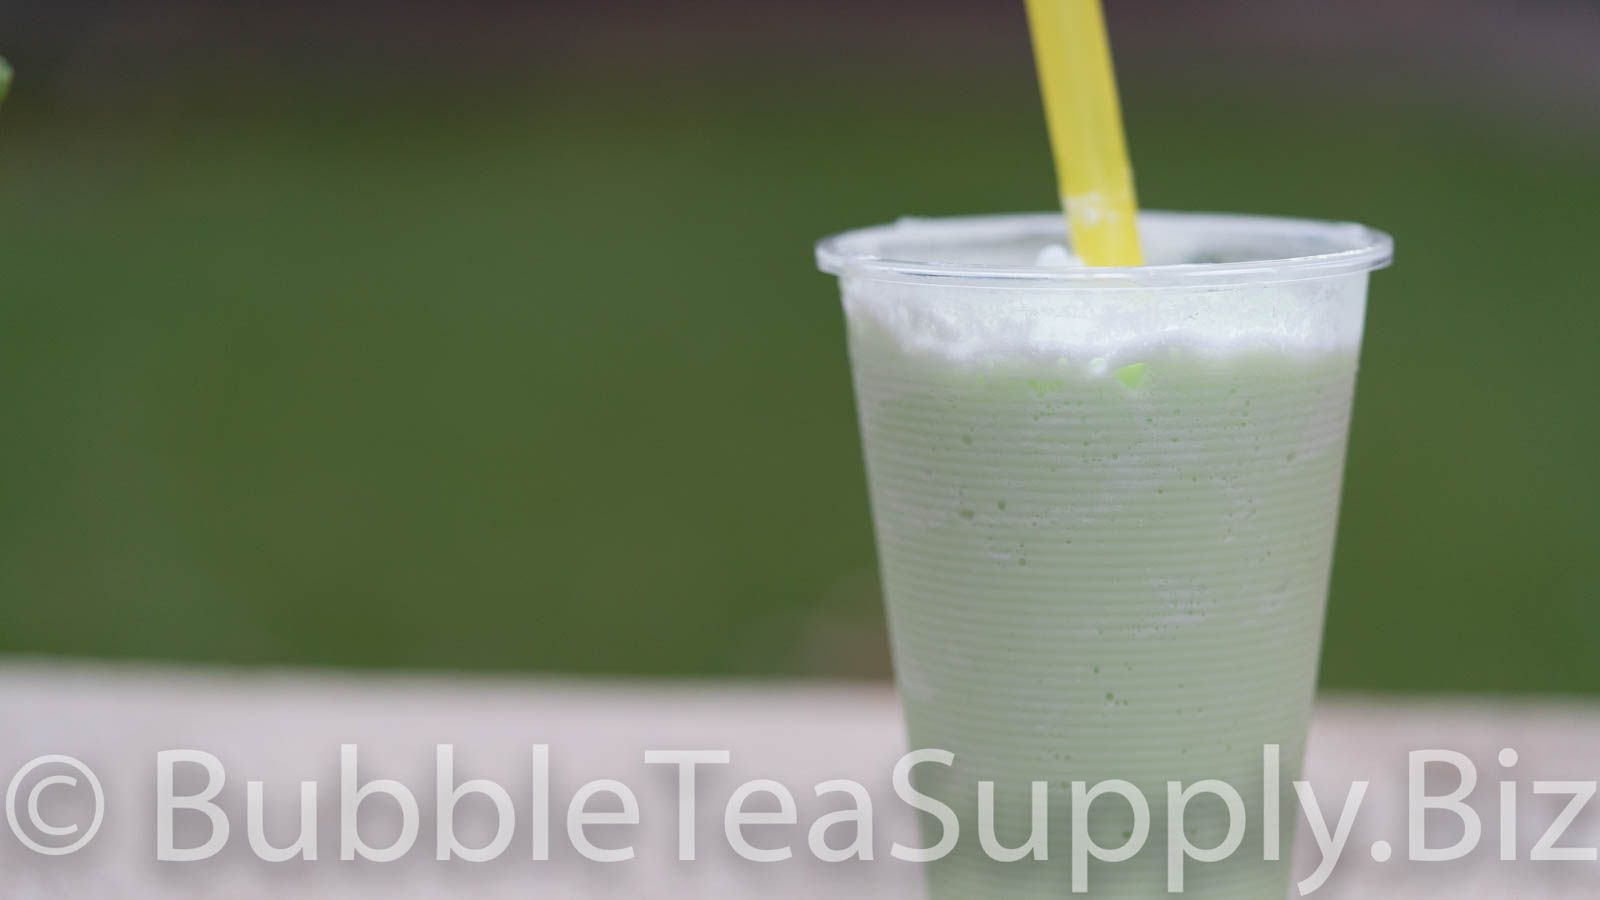 Honeydew Bubble Tea - Teak & Thyme